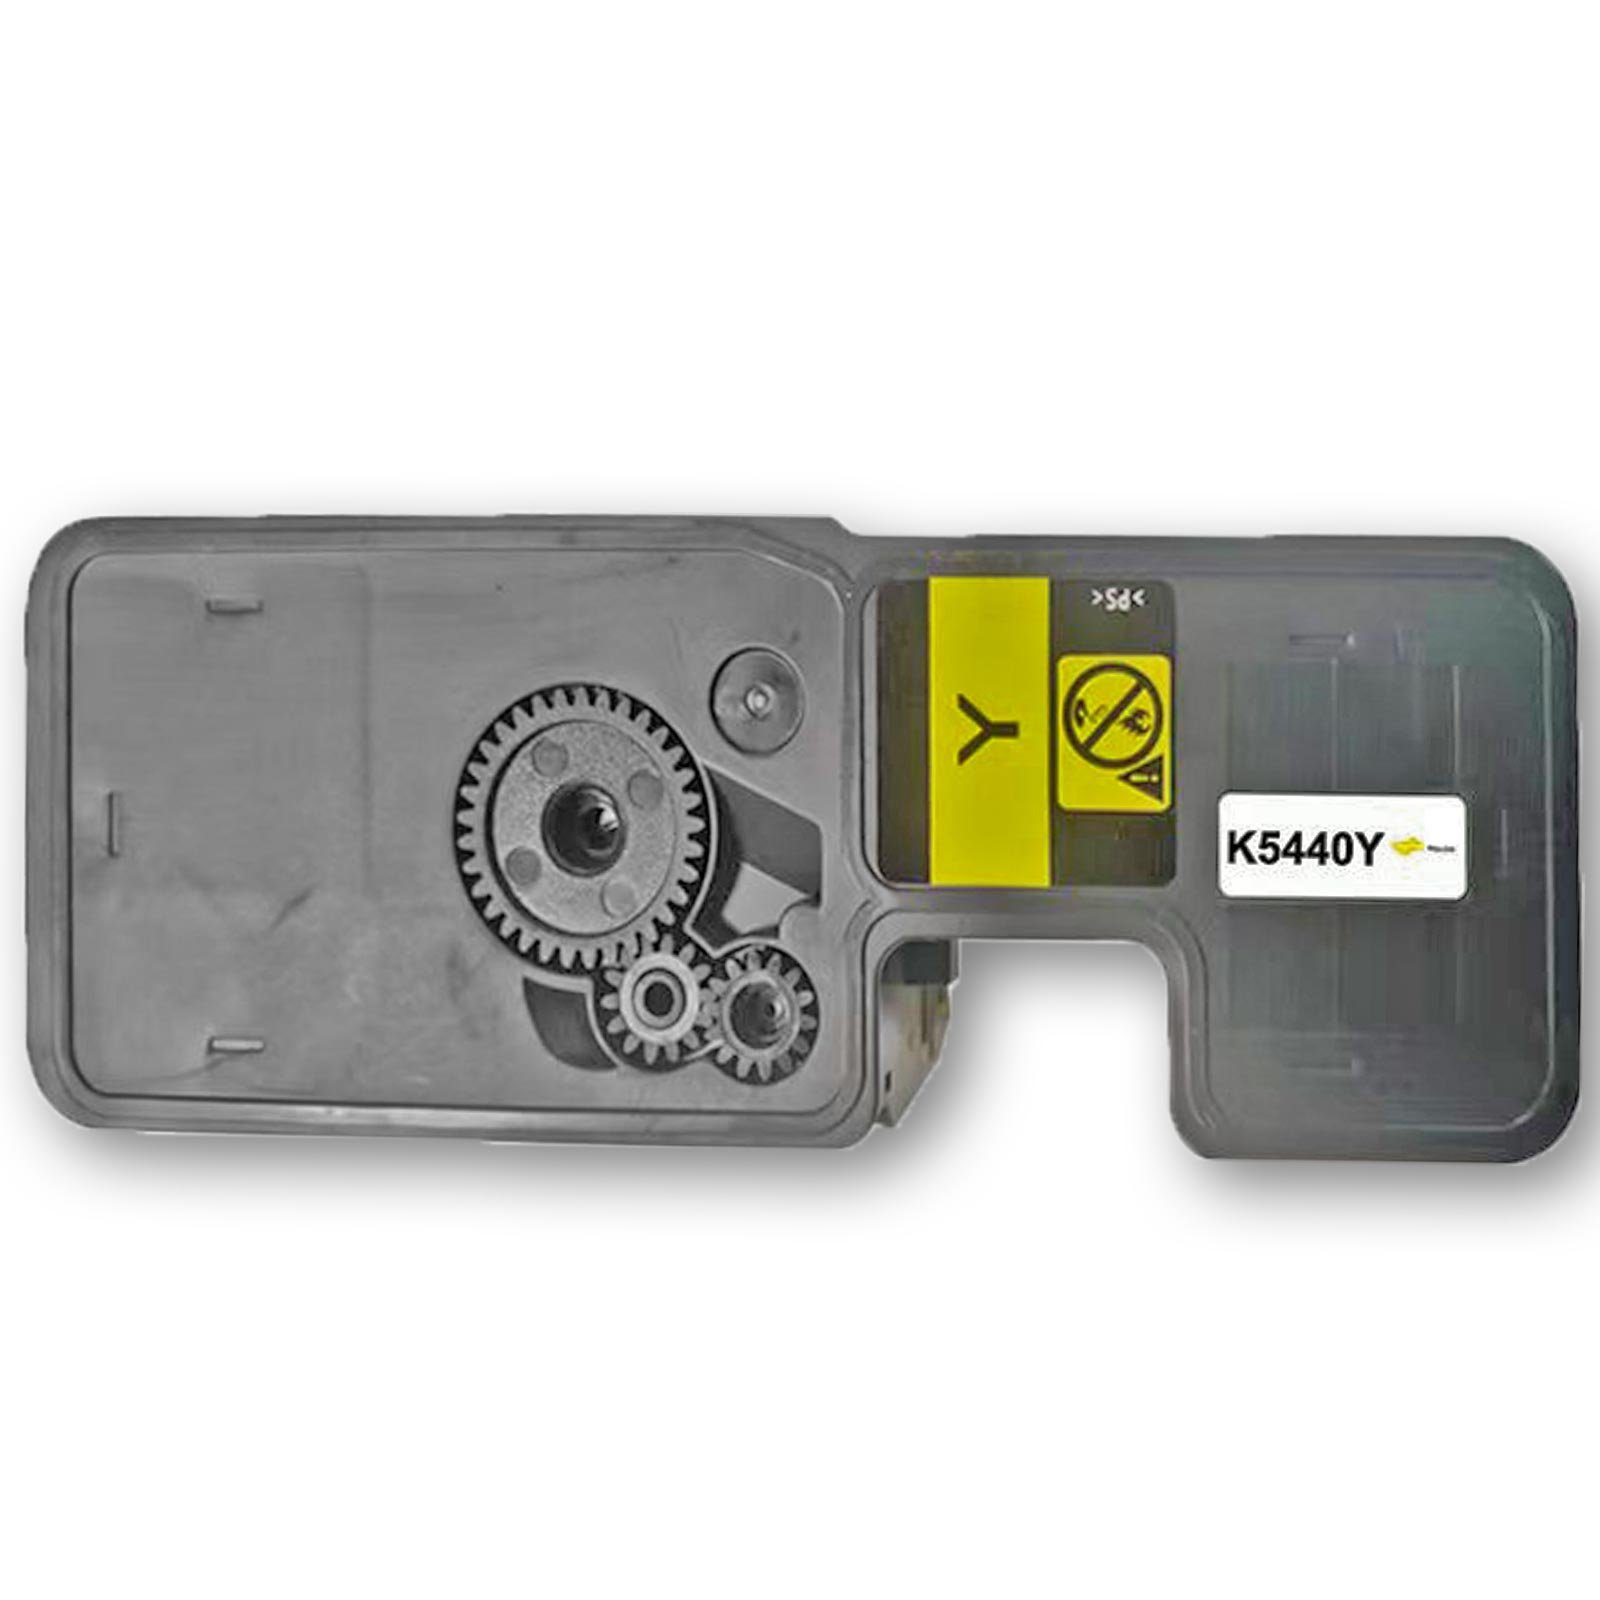 Gigao Tonerkartusche Kompatibel Kyocera Multipack Magenta (Schwarz, 4-Farben TK-5440 Cyan